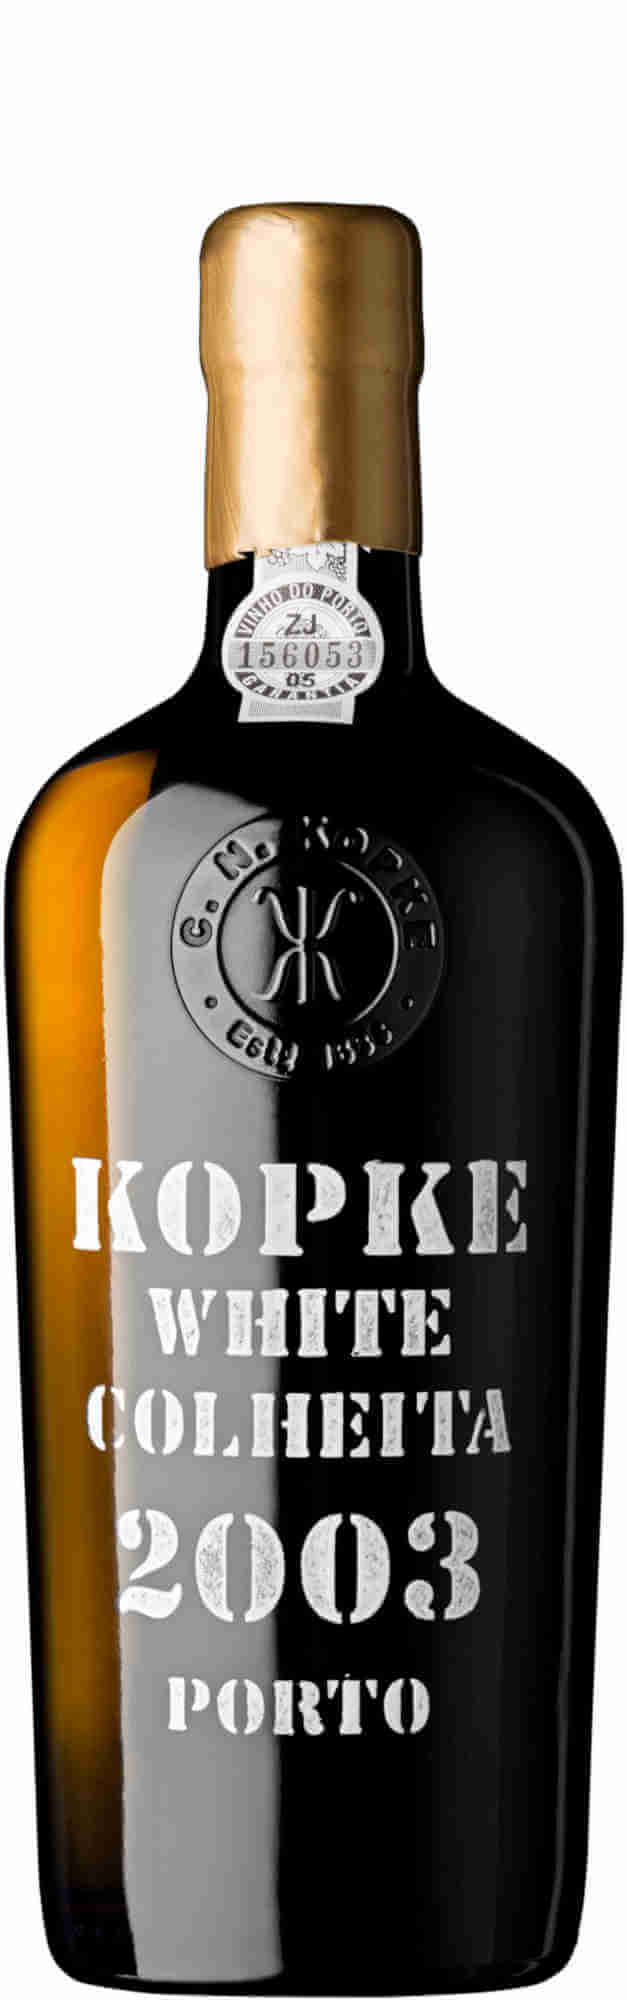 Kopke-White-Port-2003